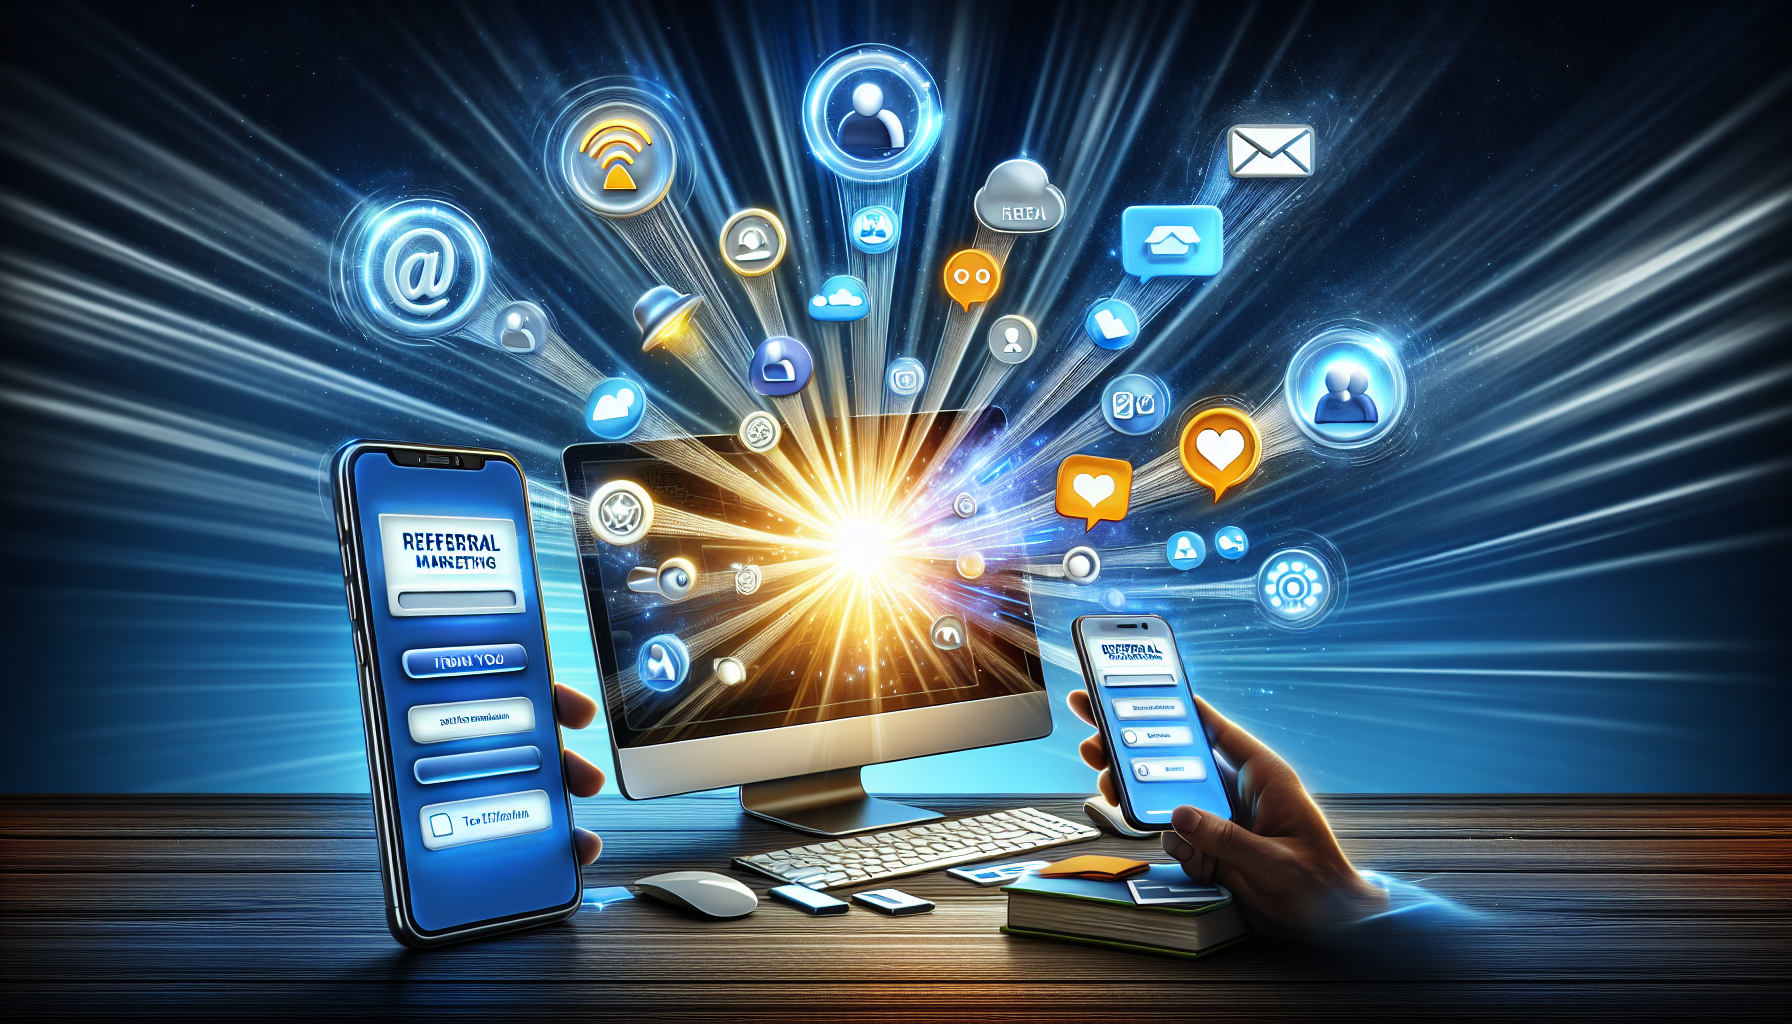 Ilustração de ferramentas e plataformas para marketing de indicação, incluindo soluções de software, integração de mídia social e marketing por e-mail